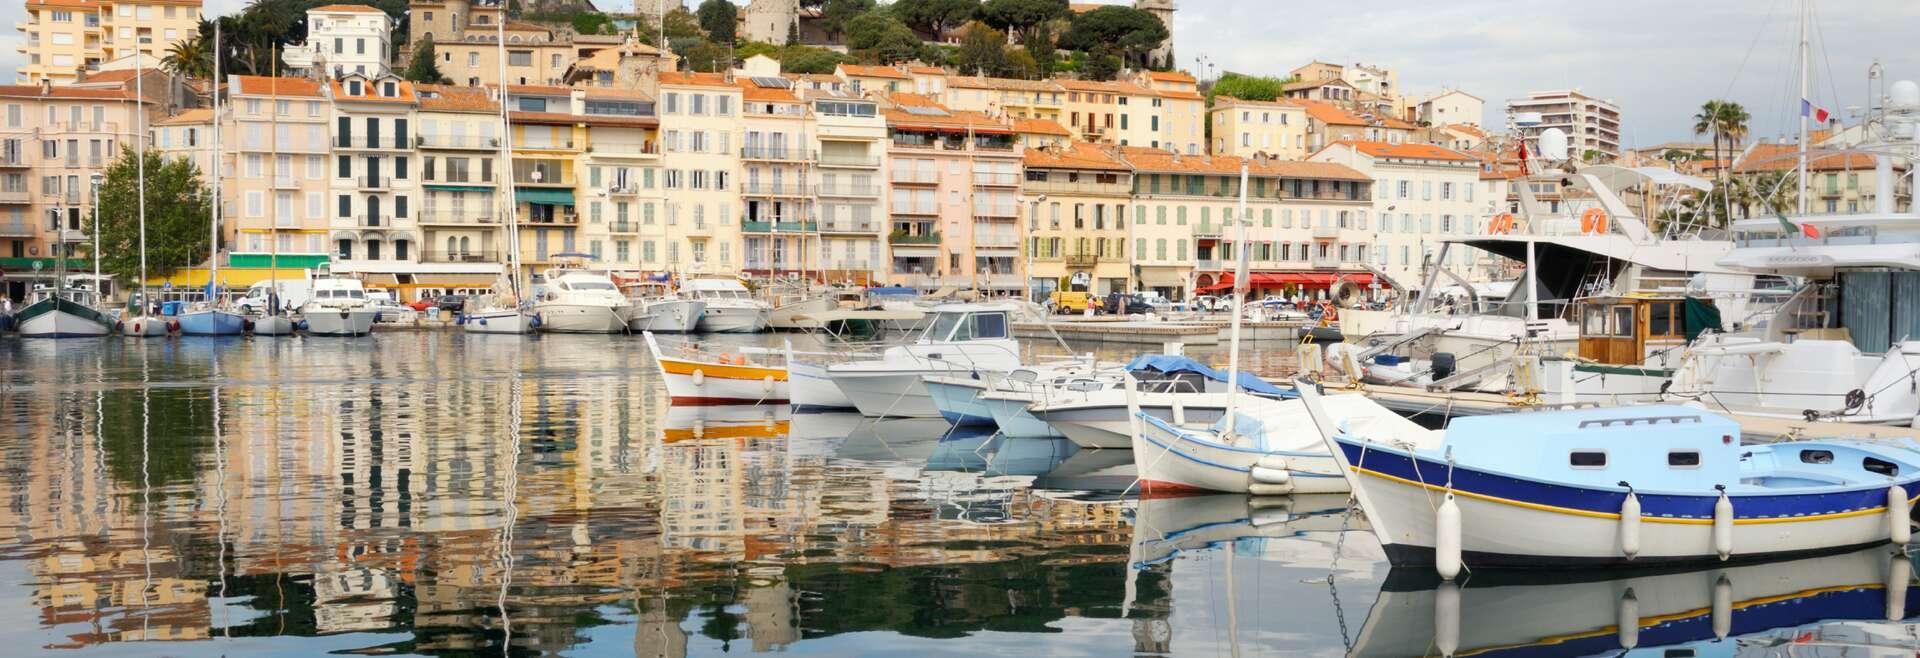 Séjour linguistique France, Cannes, Port de Cannes